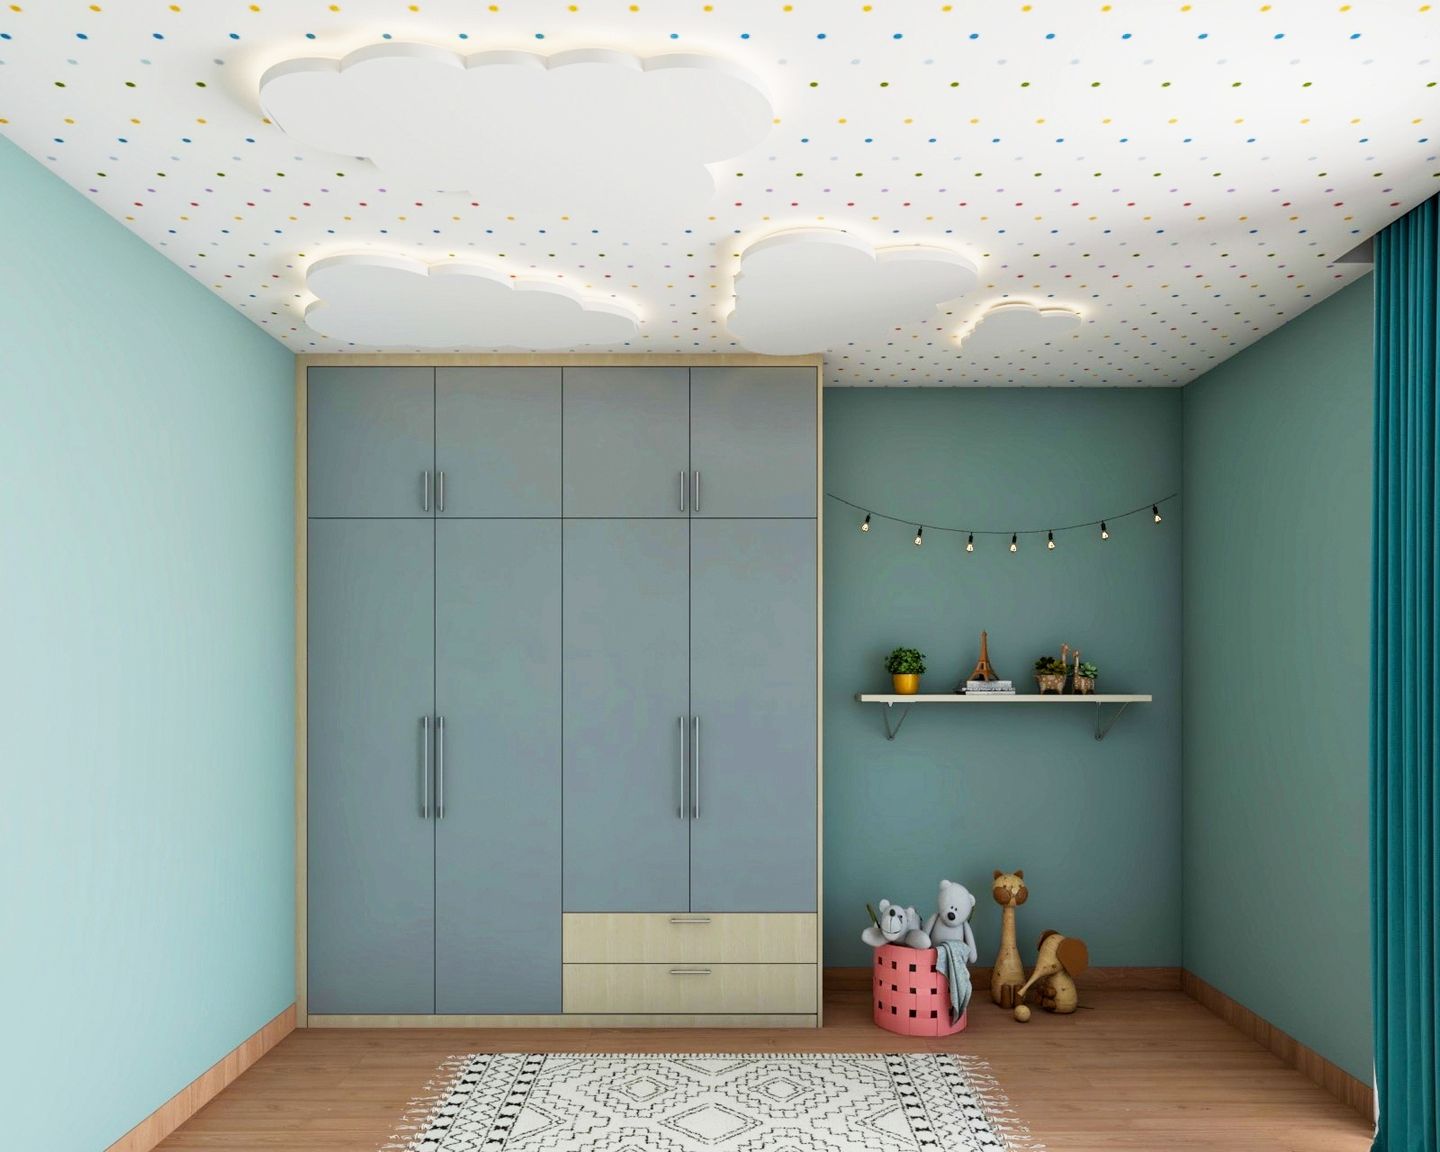 Cloud-Shaped POP Ceiling Design For Kids Bedroom - Livspace